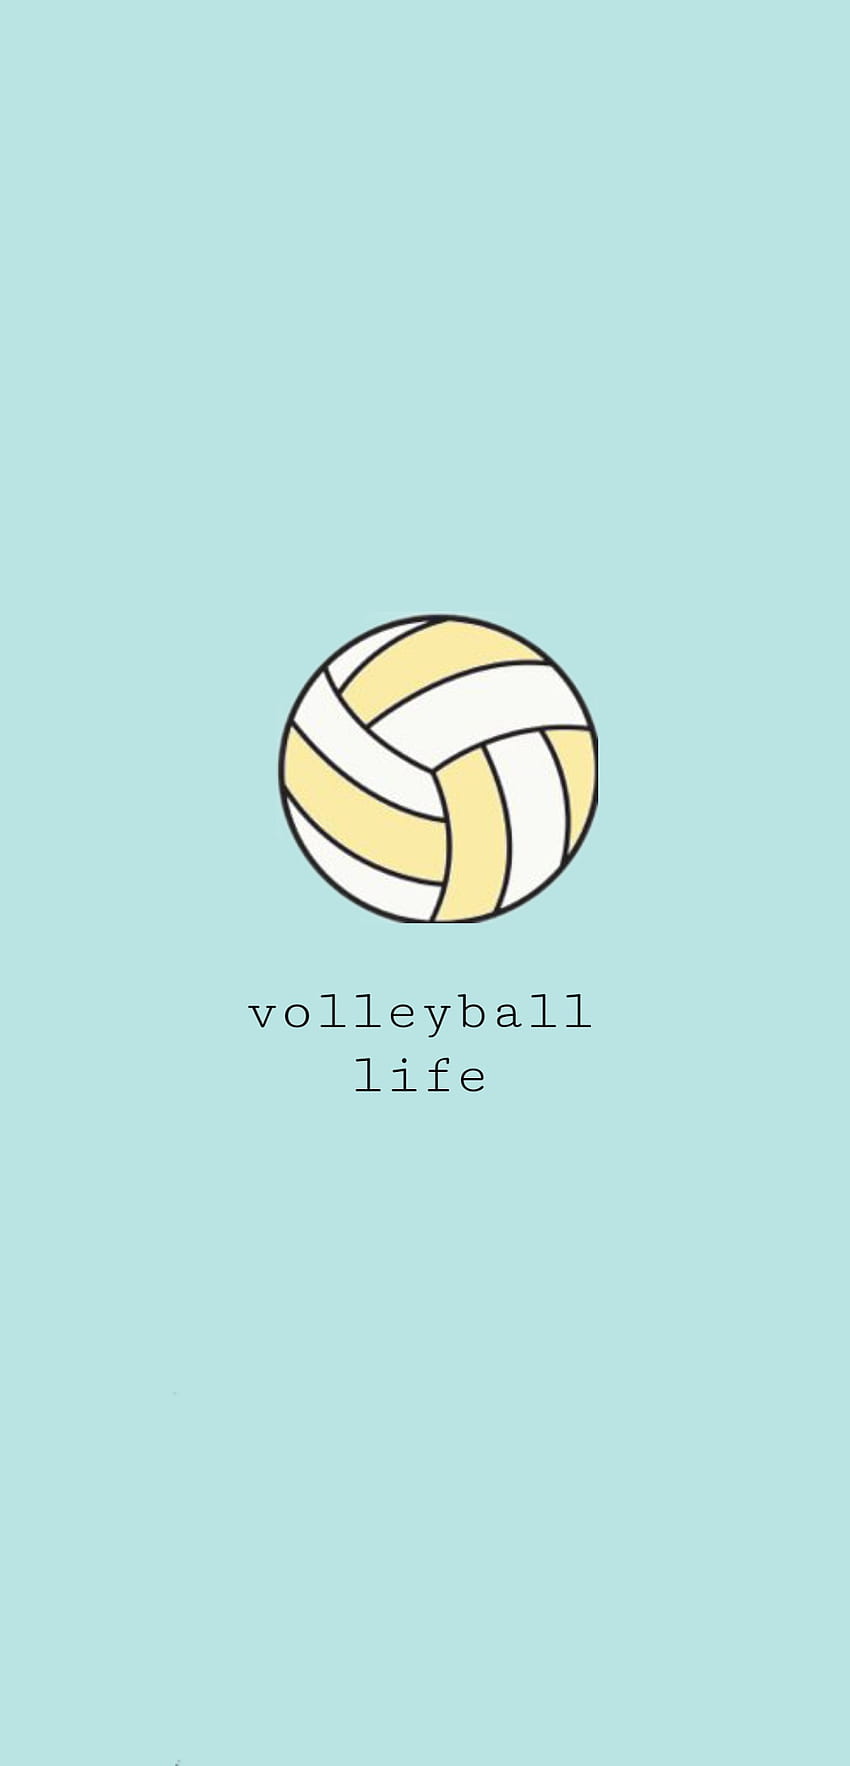 Volleyball, ball, sports equipment HD phone wallpaper | Pxfuel